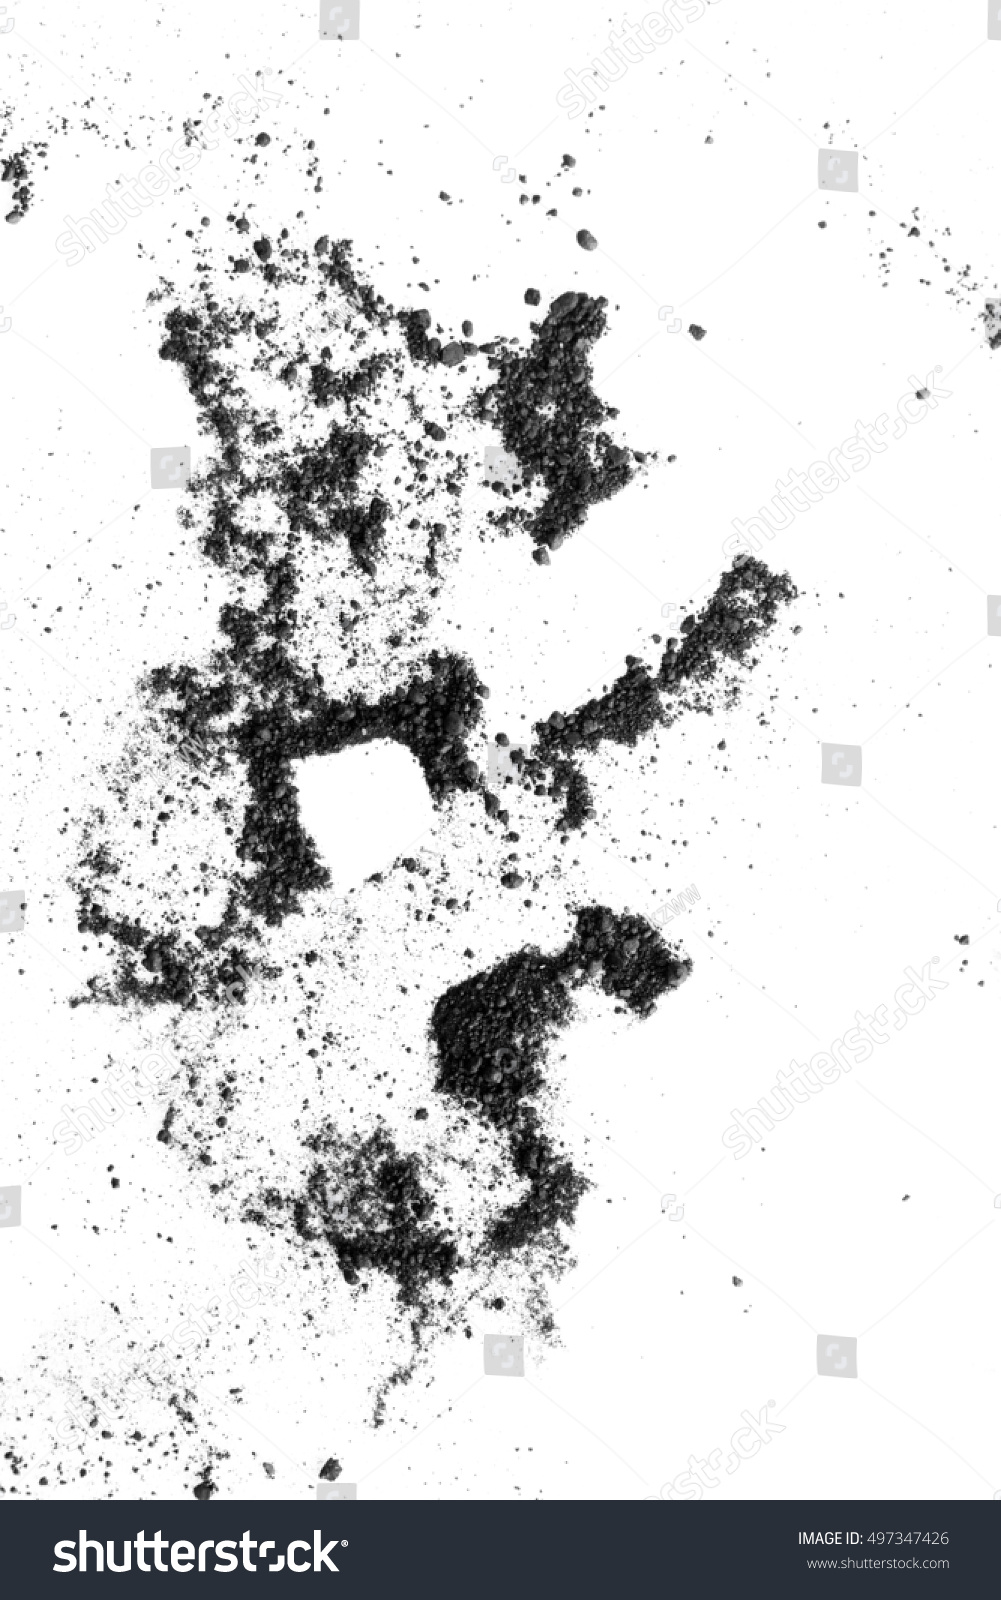 Isolated Black Powder On White Background Stock Photo 497347426